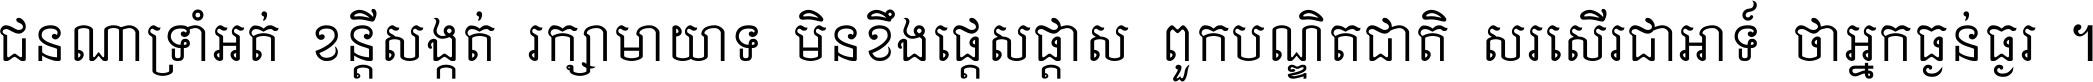 Khmer Mondulkiri U OT ls